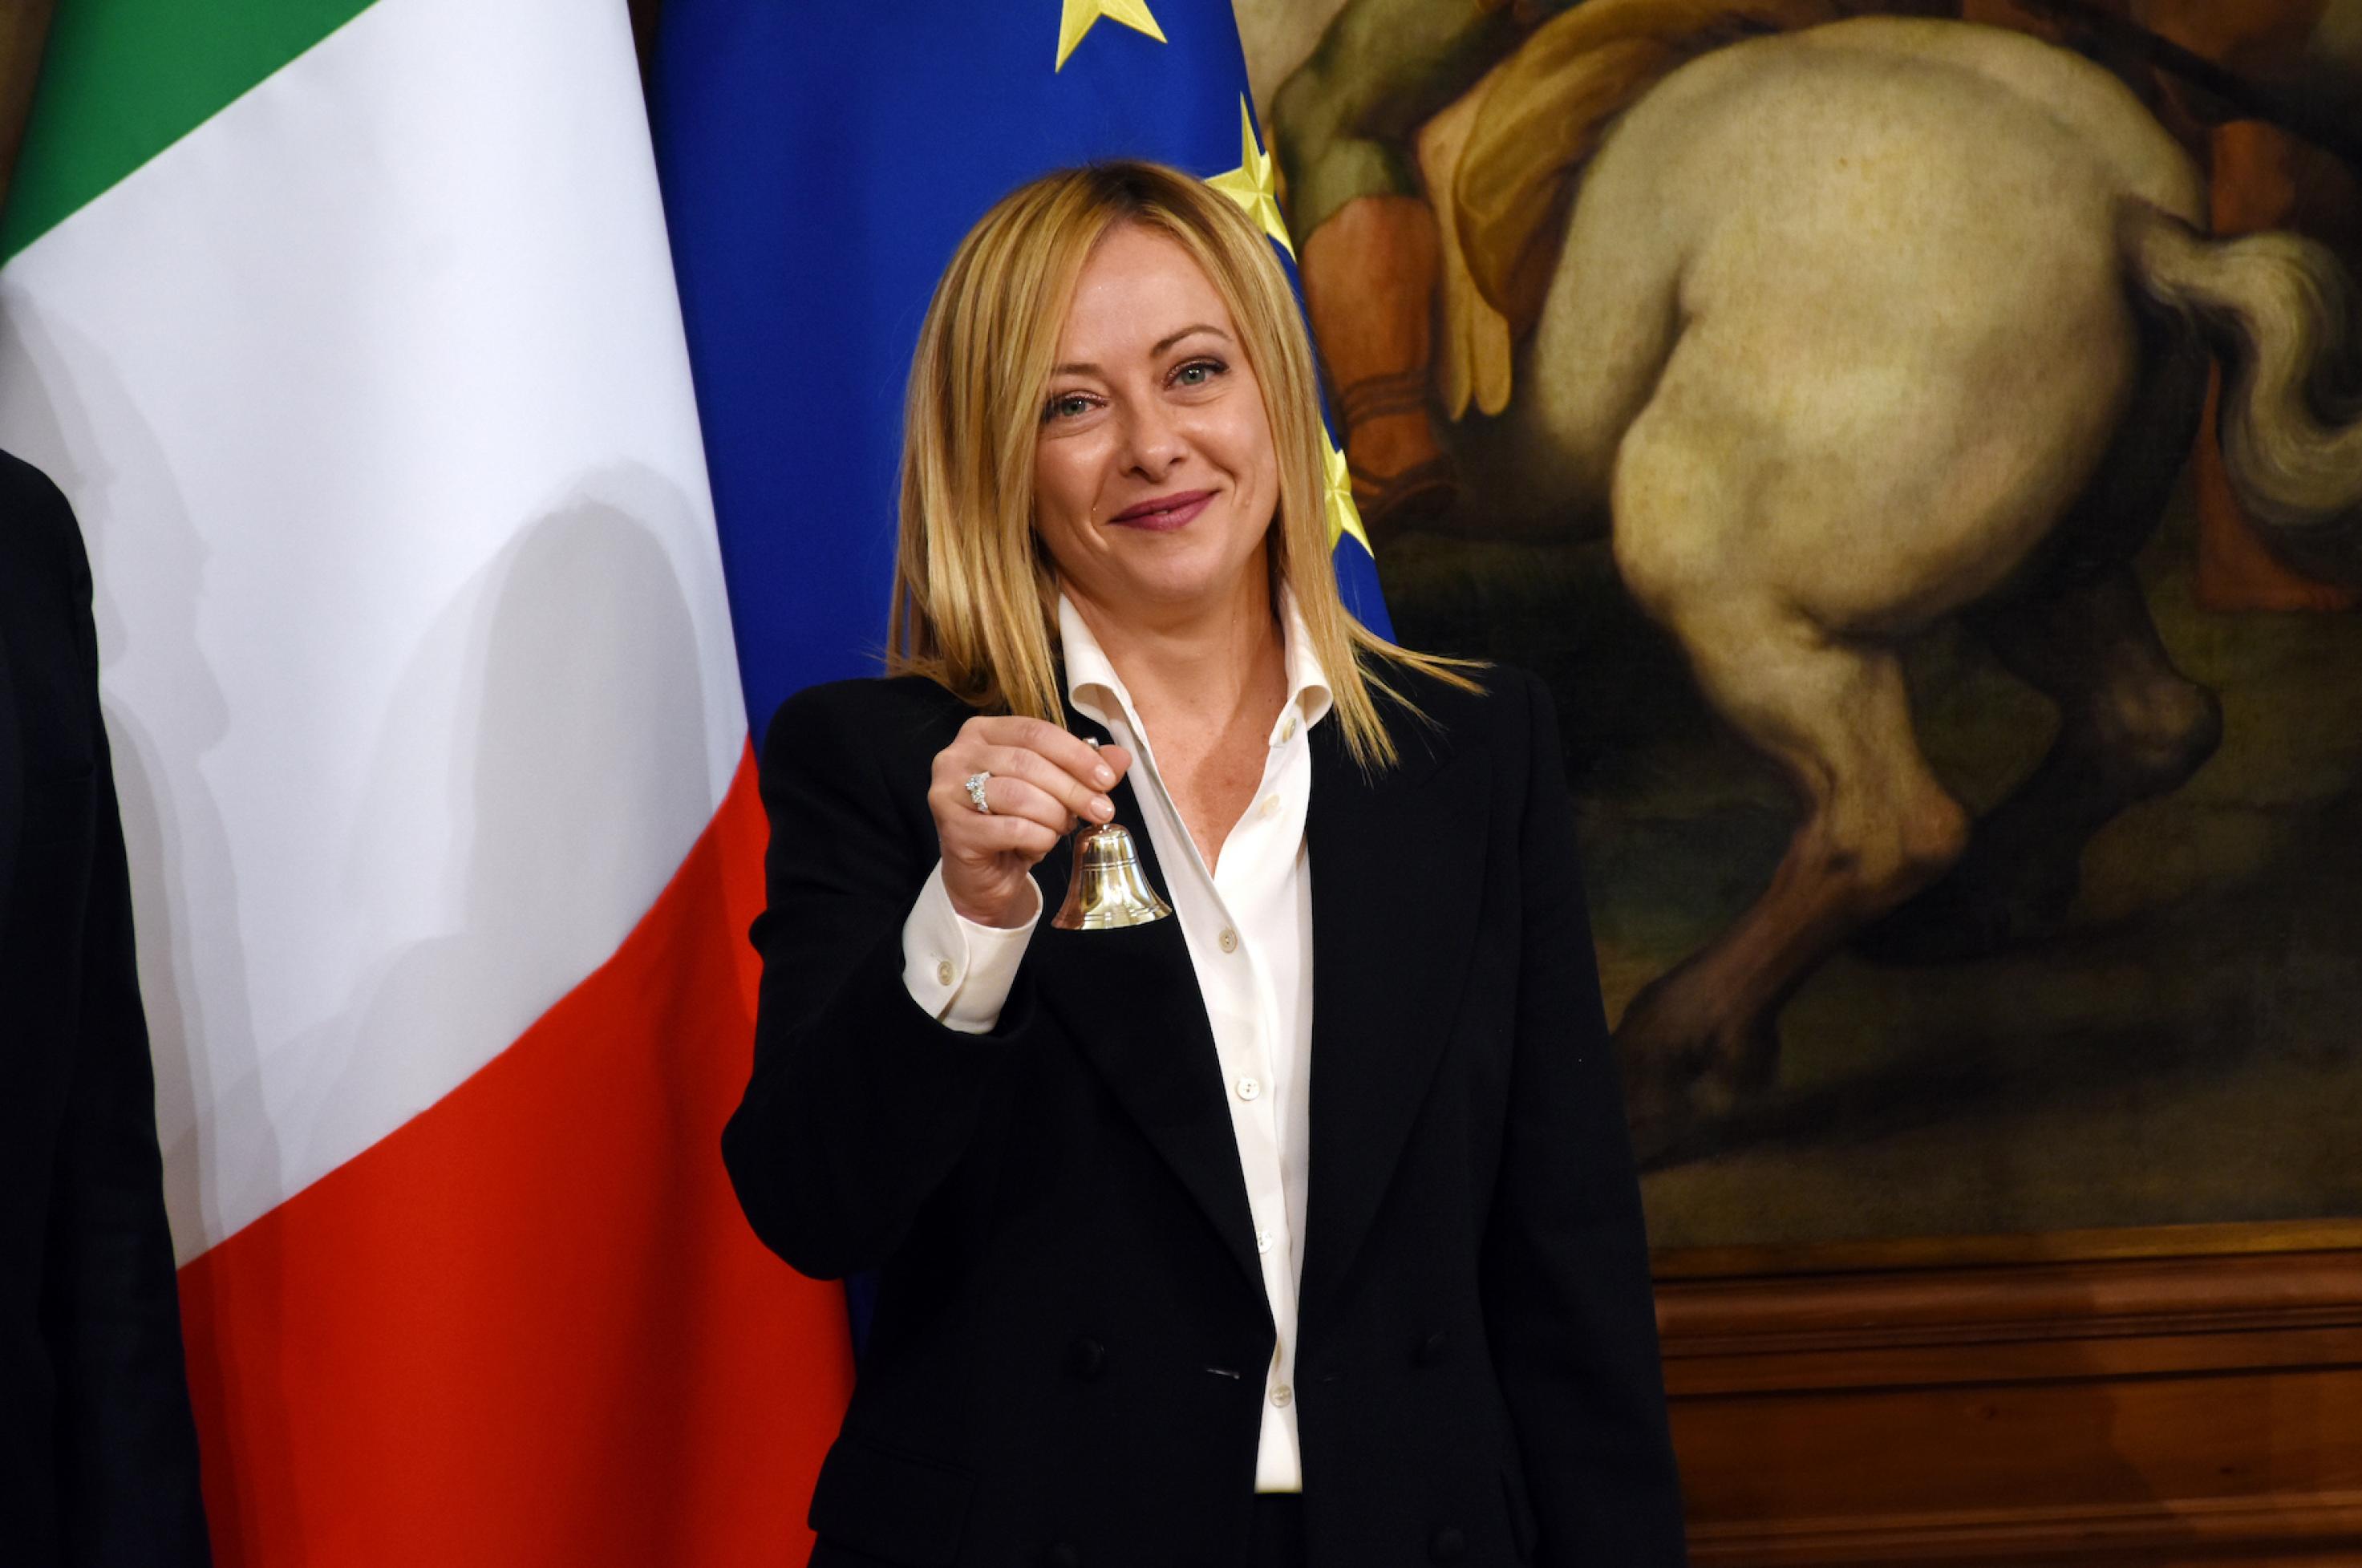 Die italienische Ministerpräsidentin im Halbportrait, sie trägt eine dunkle Anzug-oder Kostümjacke zu einer weißen Bluse. Links von ihr sind Ausschnitte der italienischen und der europäischen Flagge zu sehen, im Hintergrund ein kleiner Ausschnitt aus einem Ölgemälde: das gut bemuskelte Hinterteil eines Pferdes, das sich mit den Vorderbeinen etwas aufgerichtet hat.